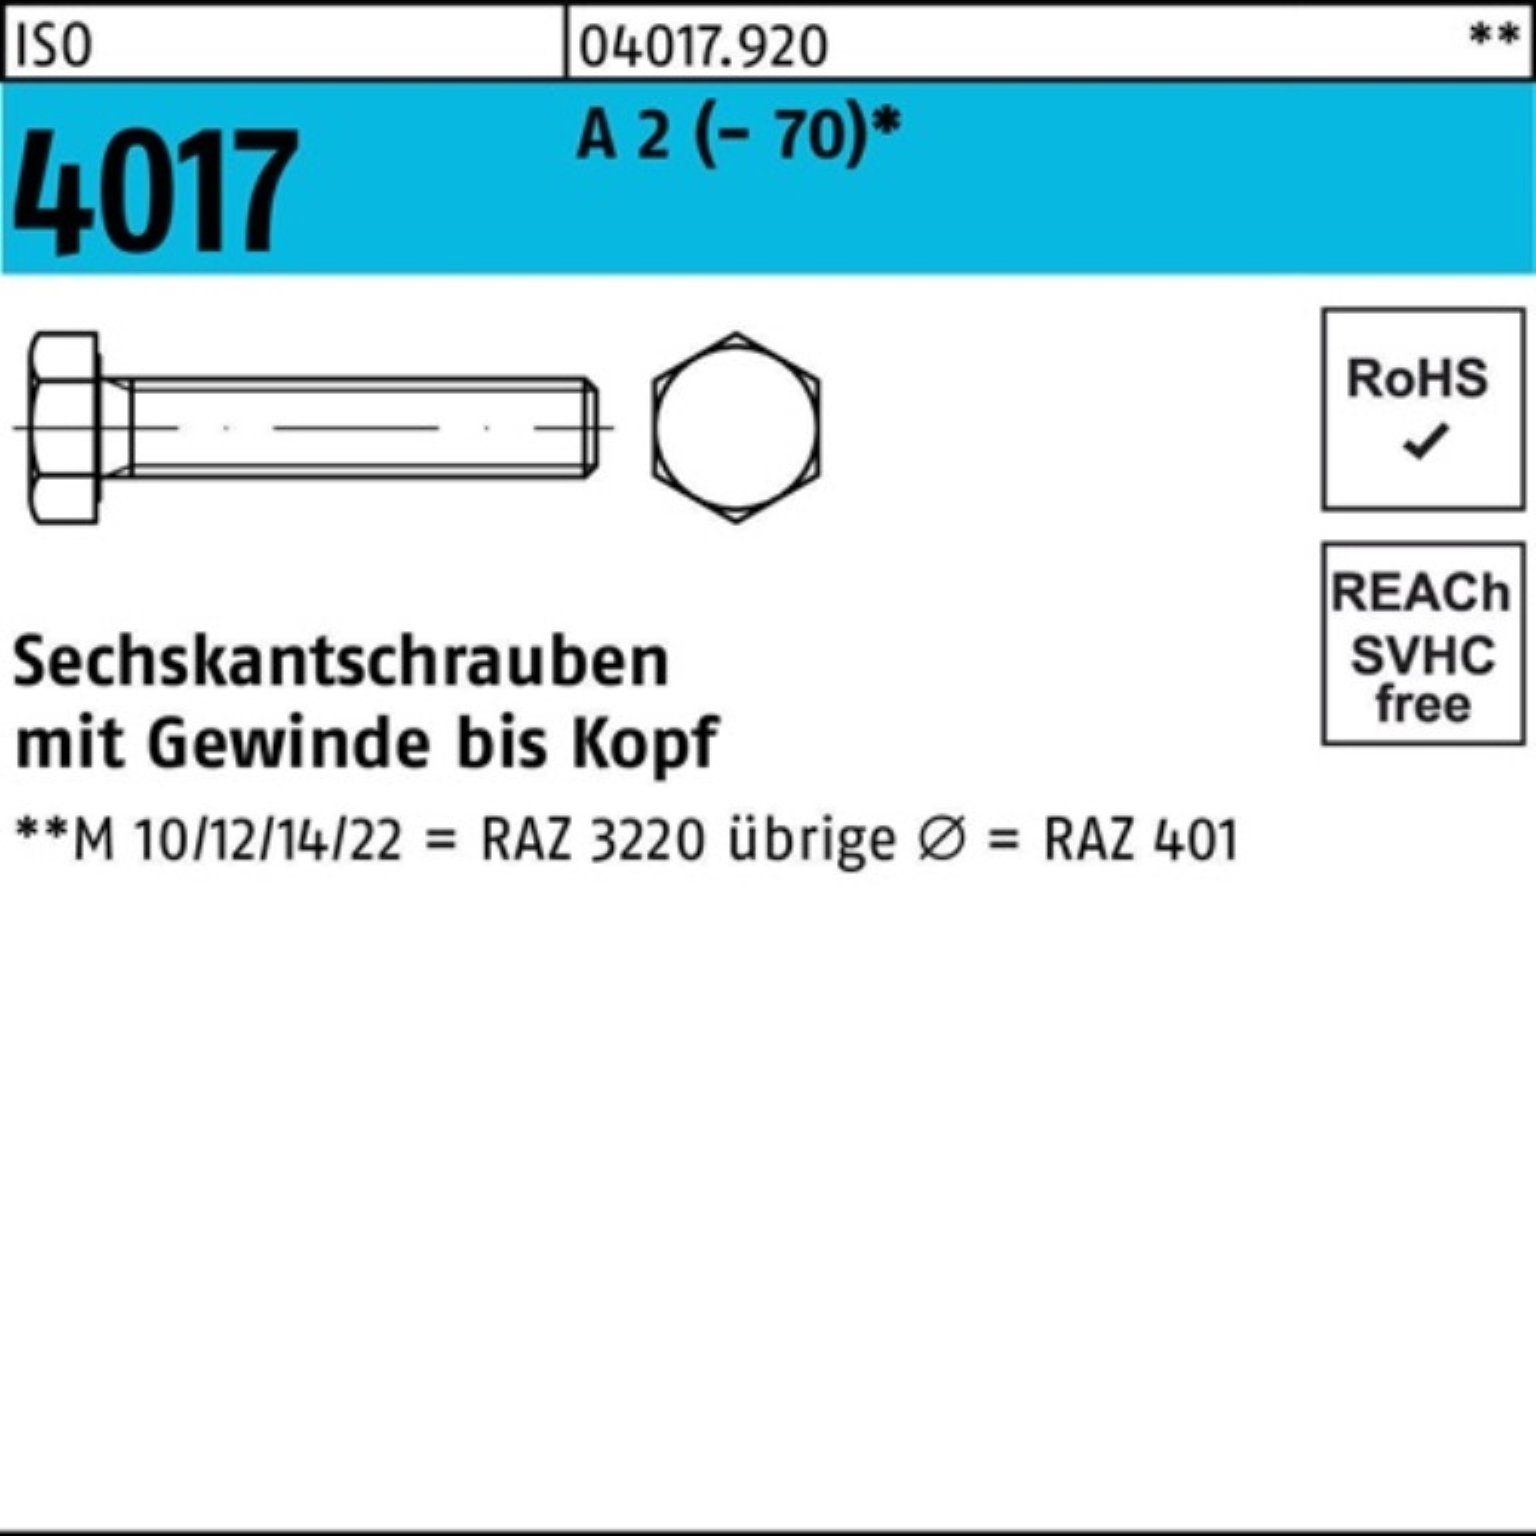 Bufab Sechskantschraube 100er Pack Sechskantschraube ISO 4017 VG M20x 200 A 2 (70) 10 Stück